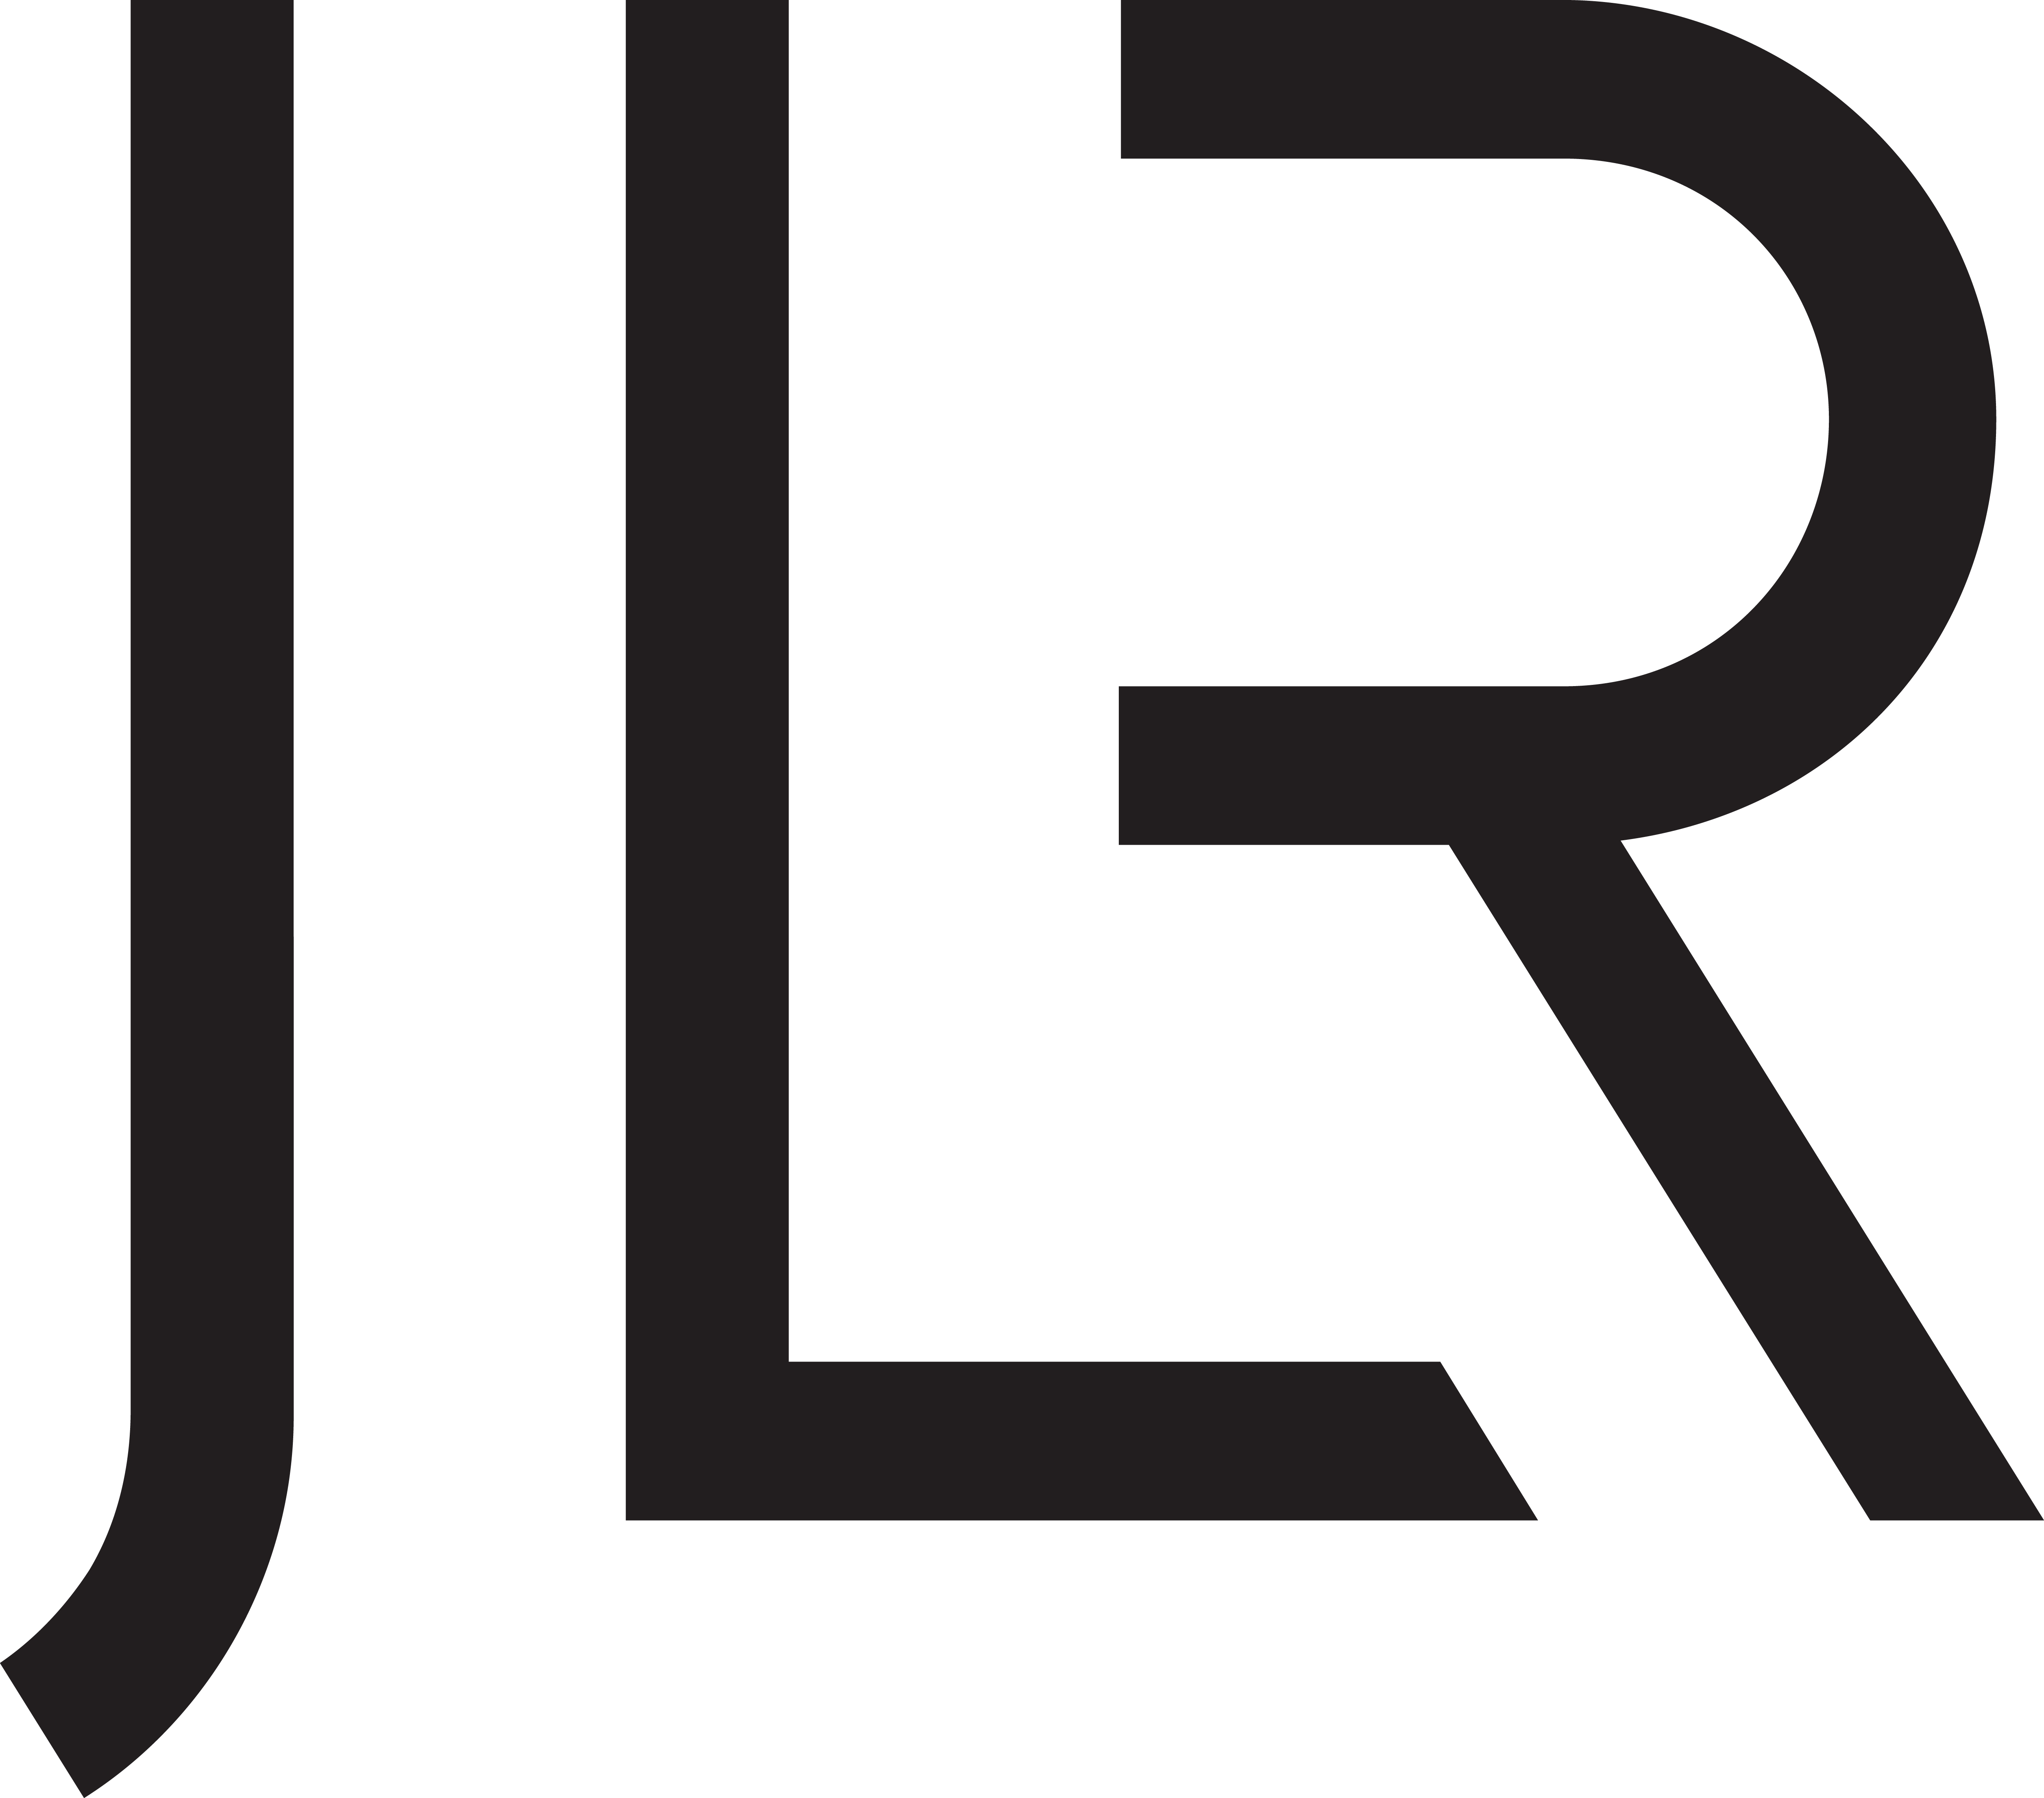 Black JLR letter logo on white background